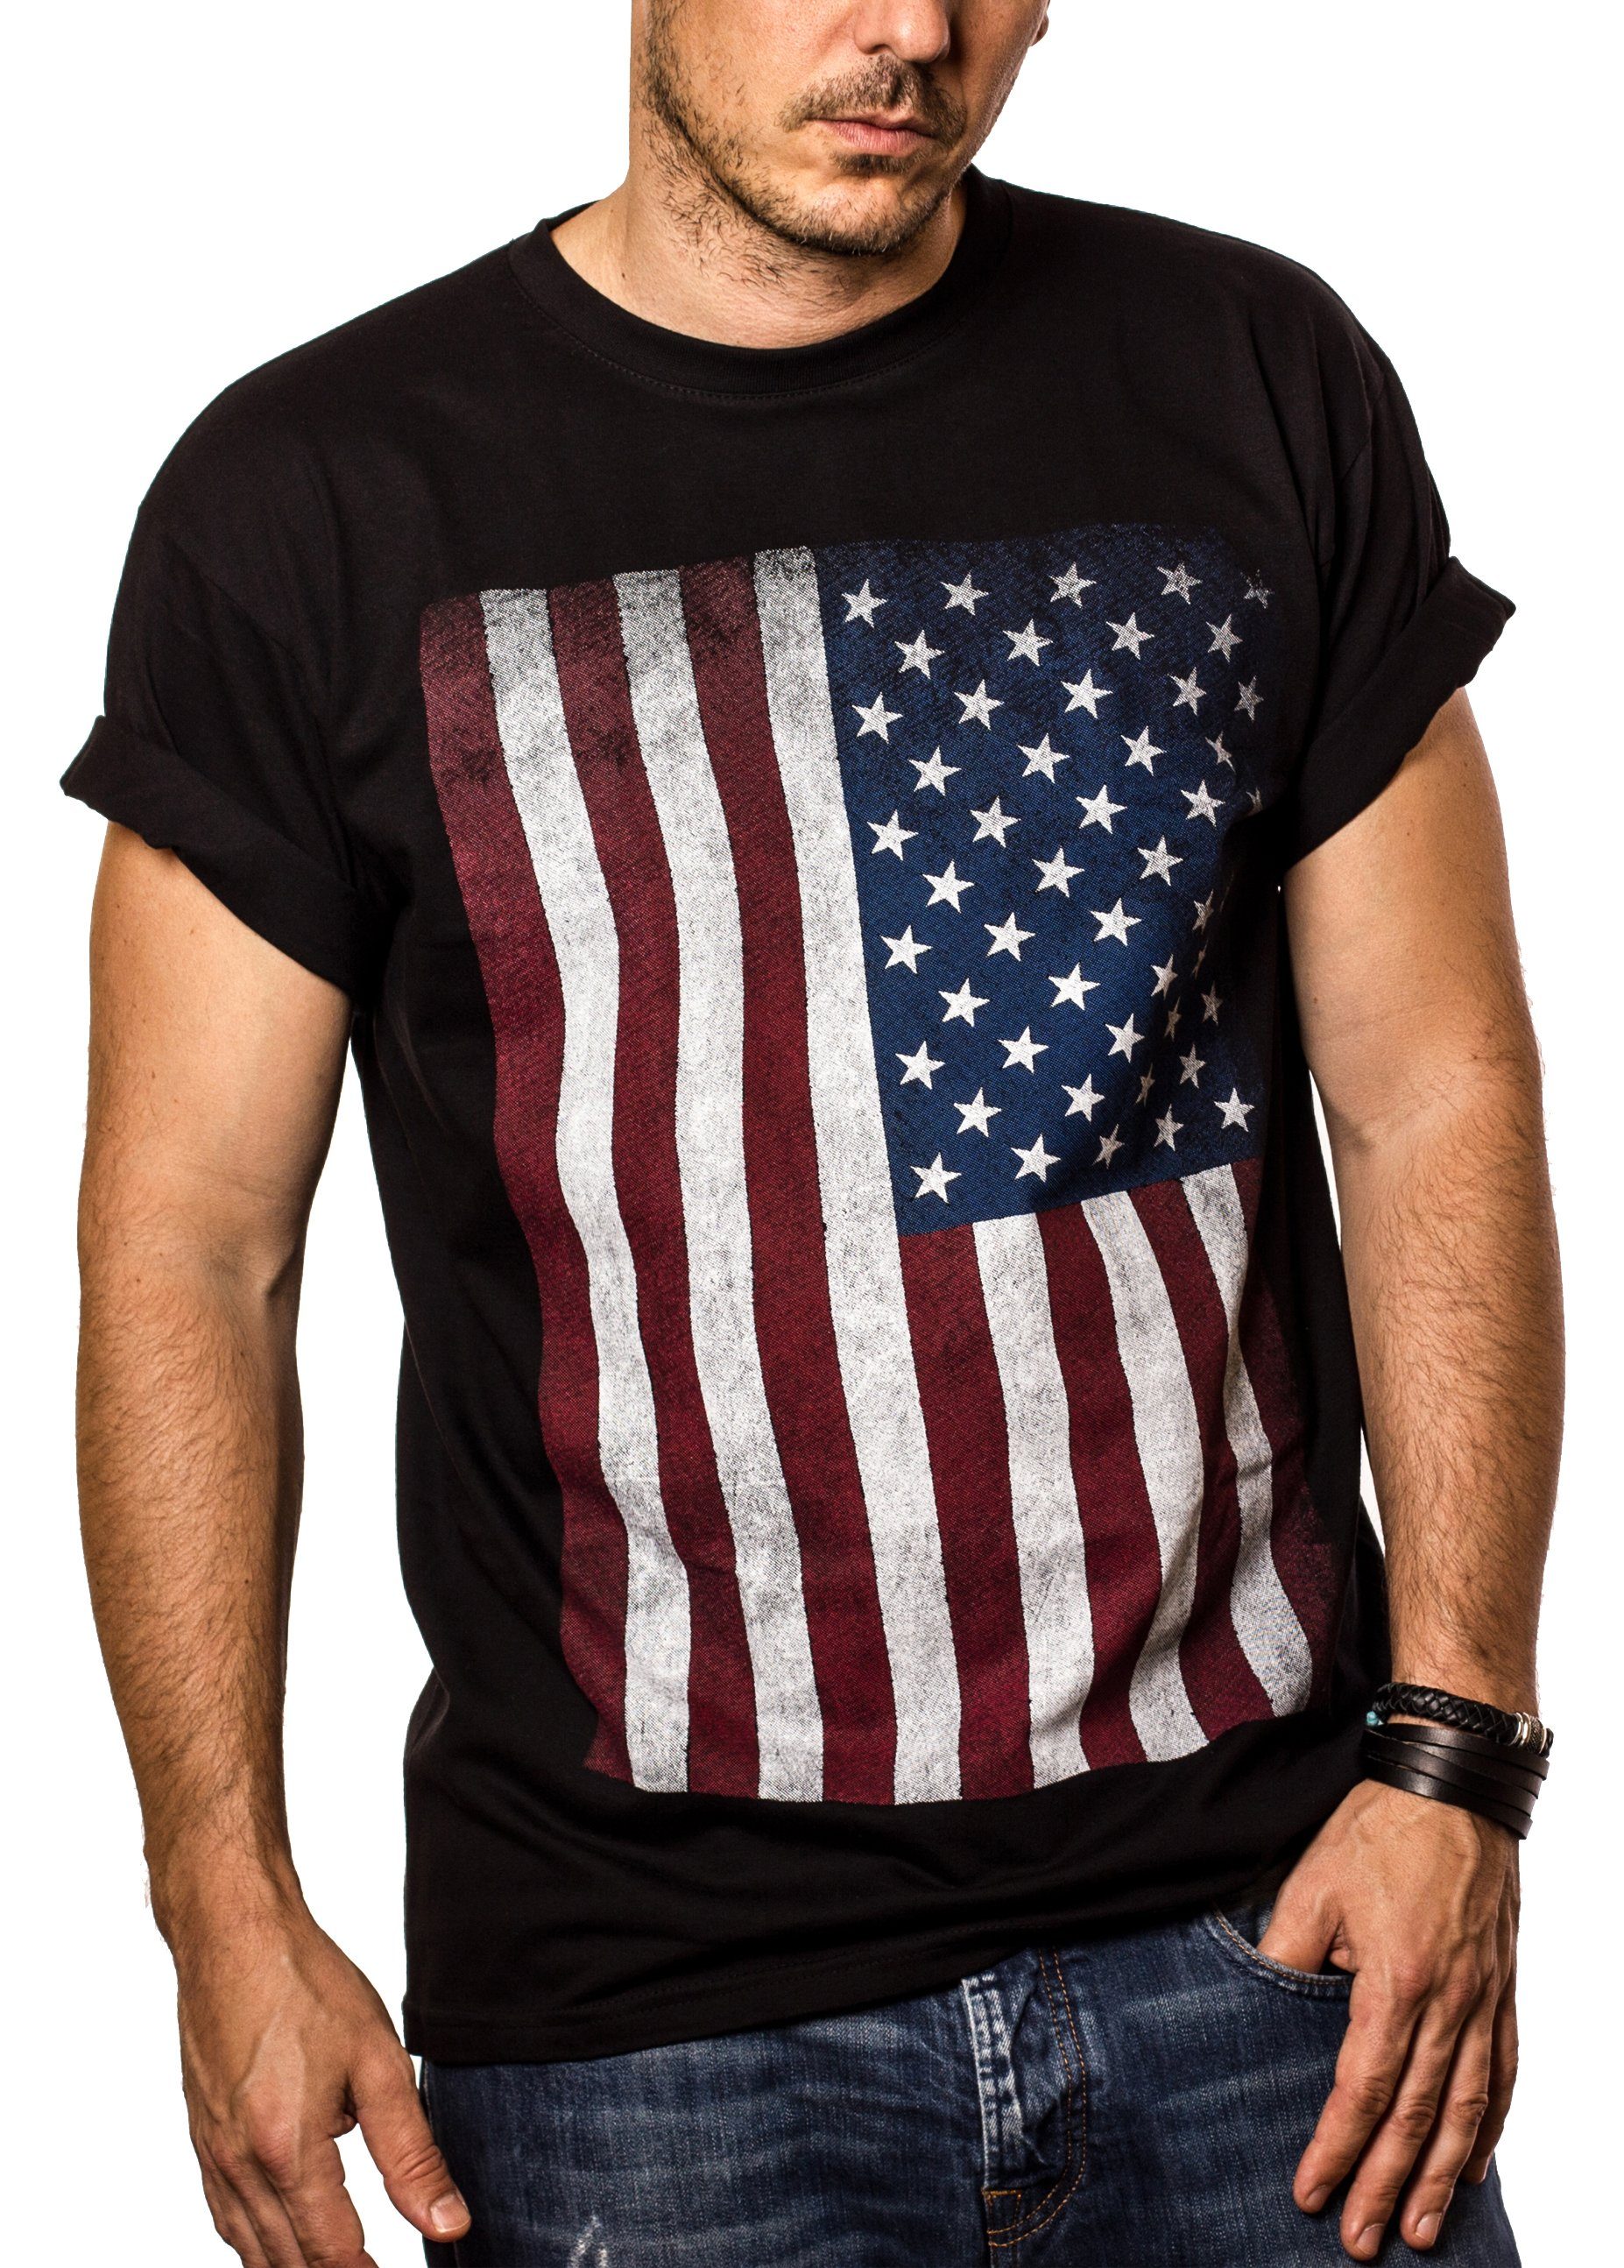 MAKAYA Print-Shirt Herren USA Army Baumwolle Amerika mit Männer US Armee Vintage aus Druck, Fahne Flagge Schwarz T-Shirt